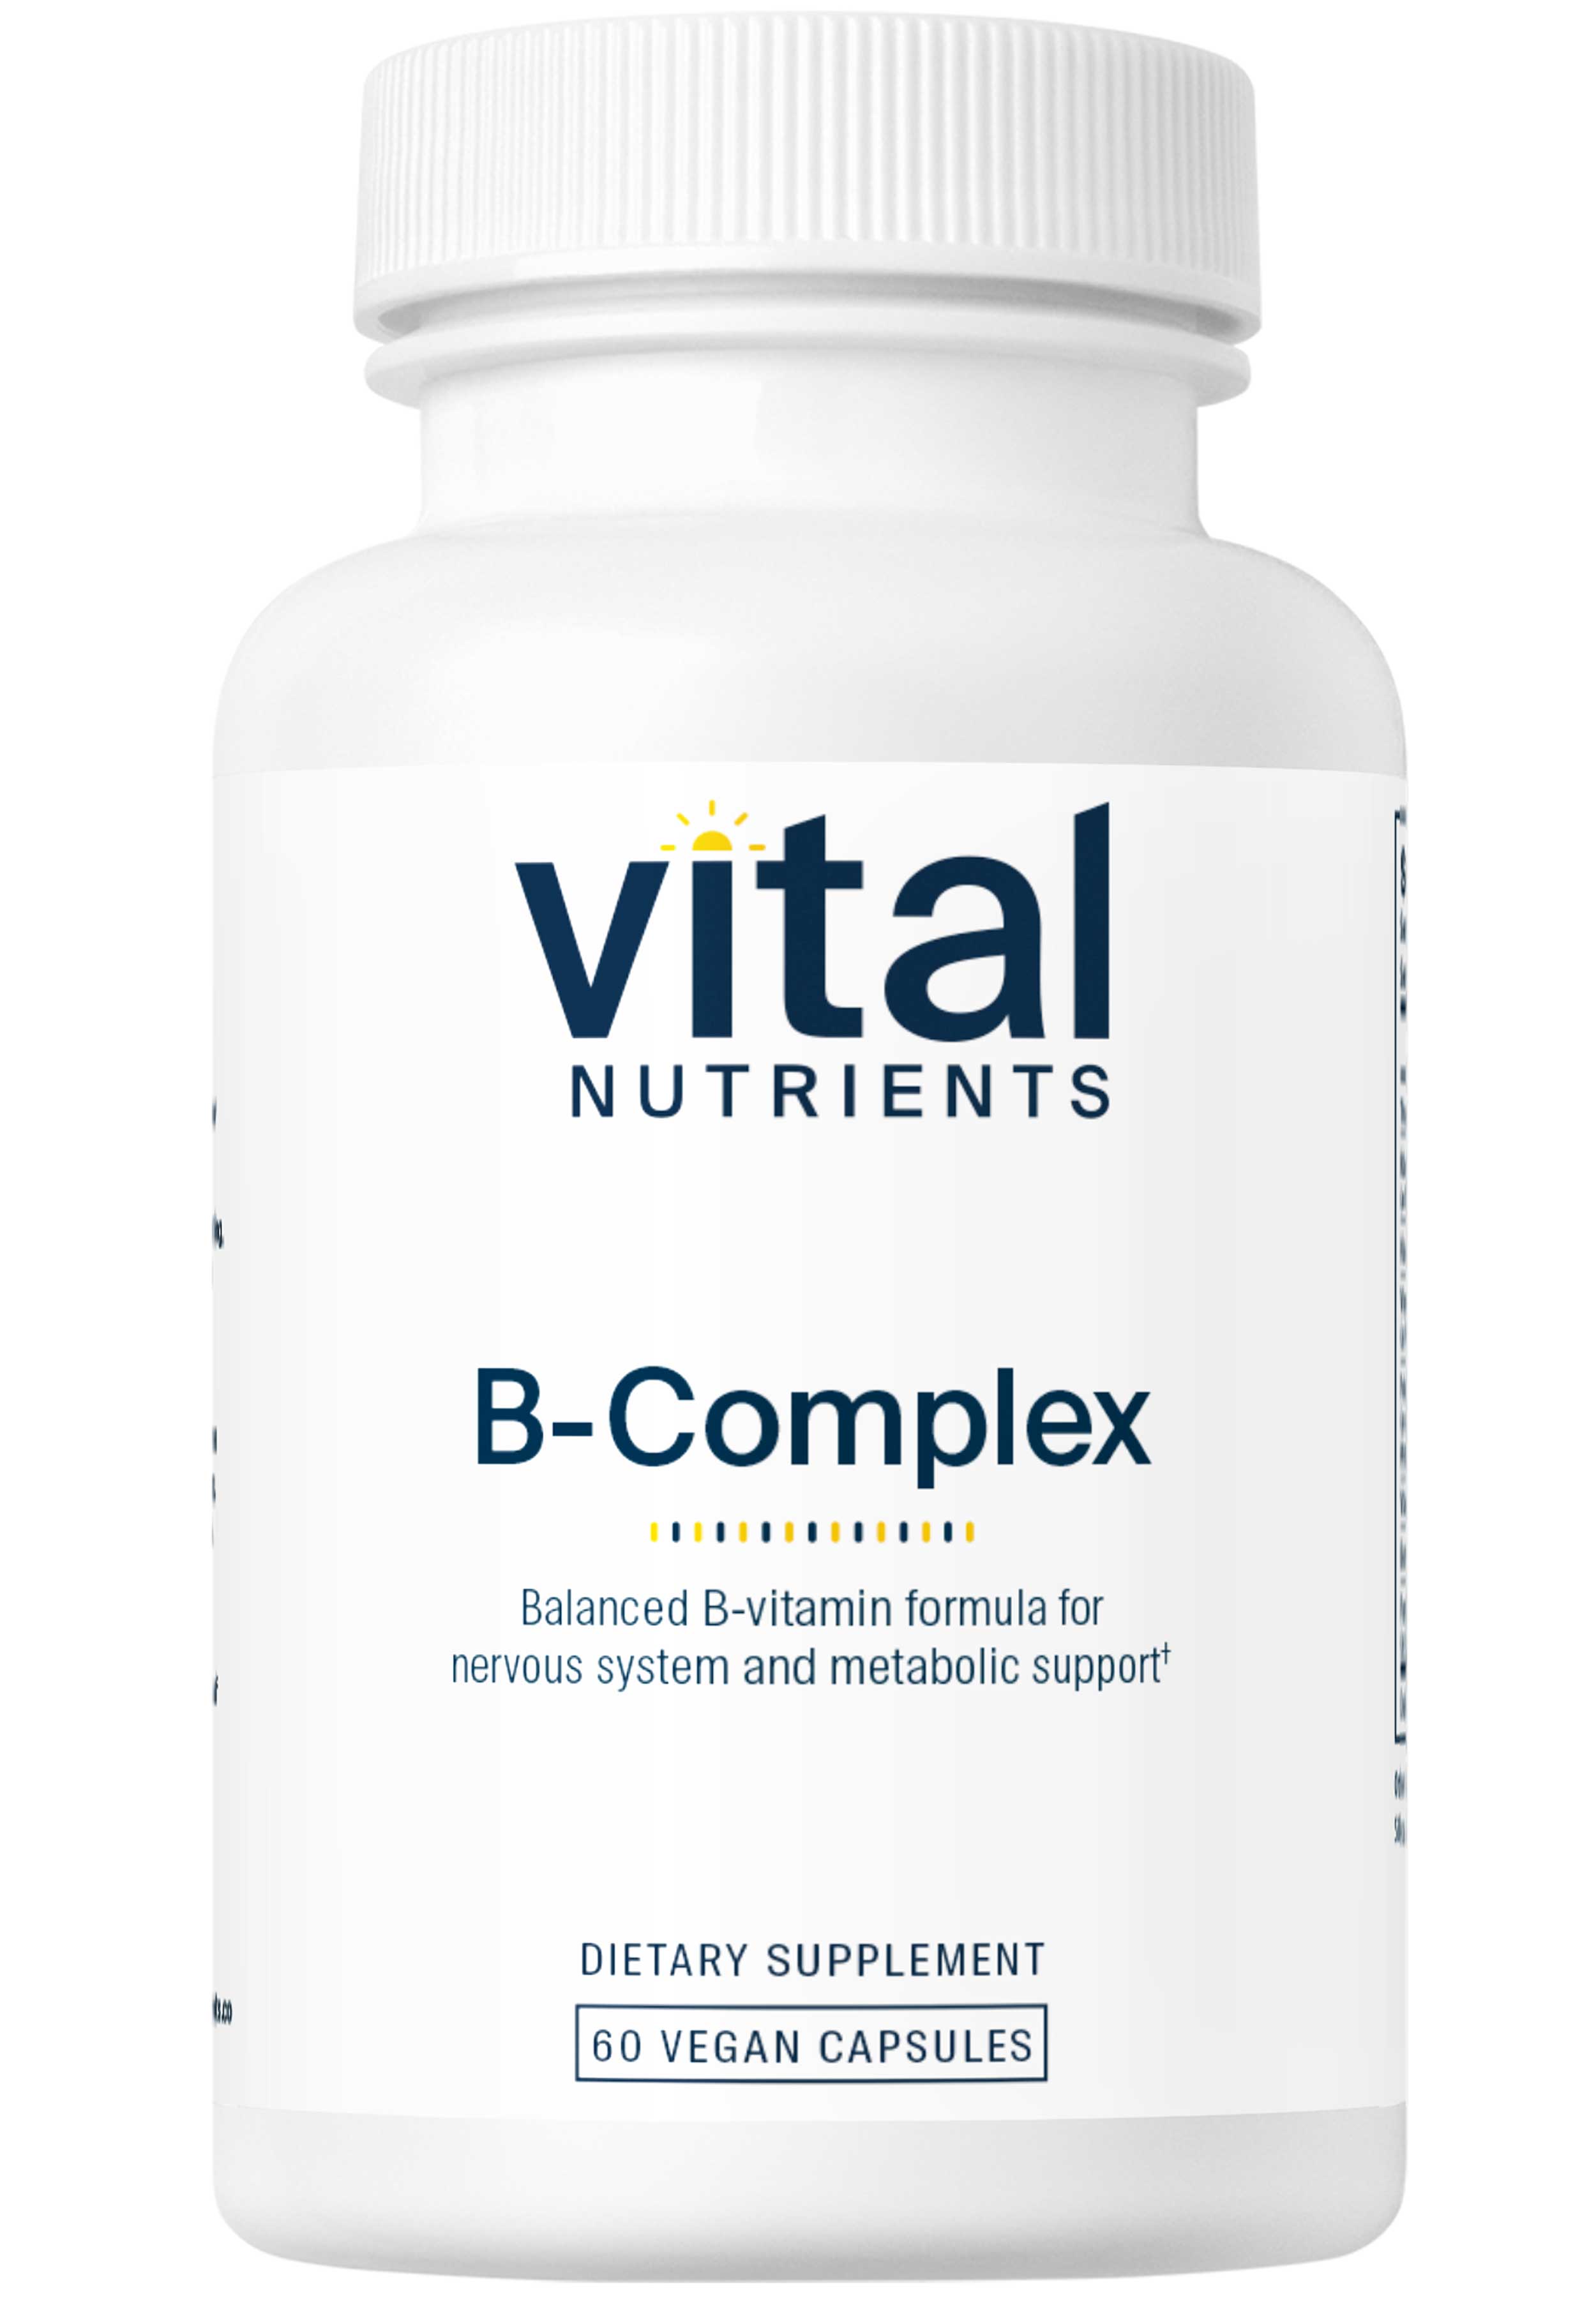 Vital Nutrients B-Complex